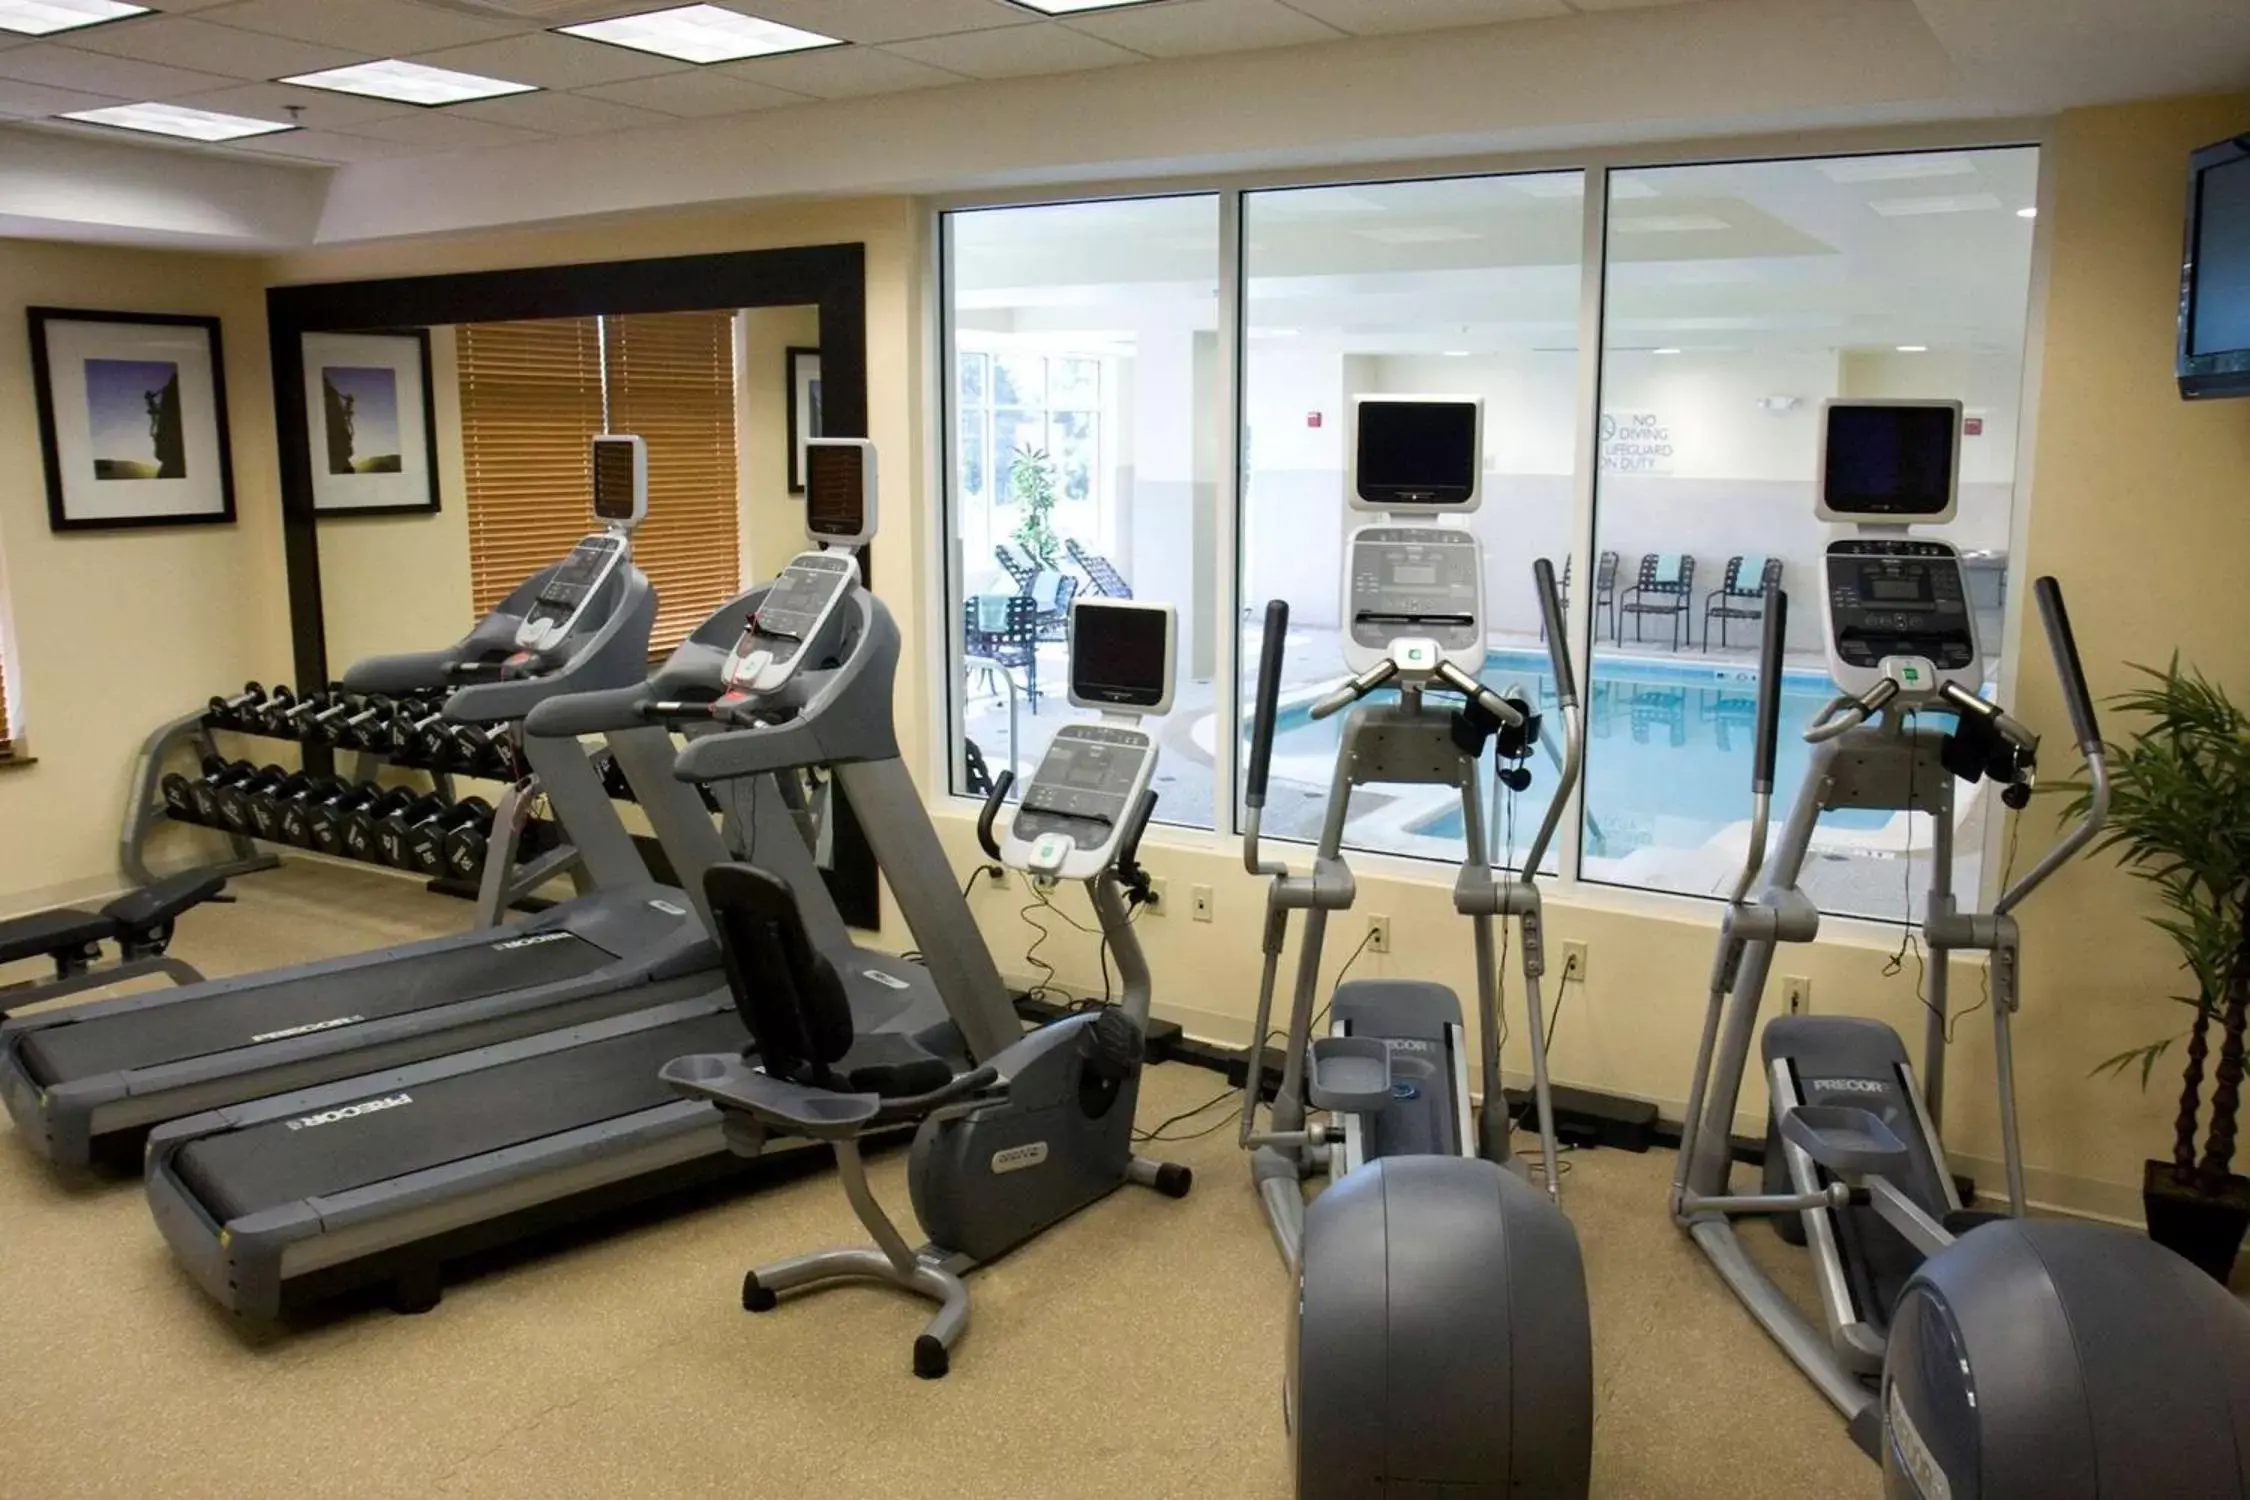 Fitness centre/facilities, Fitness Center/Facilities in Hilton Garden Inn Aberdeen